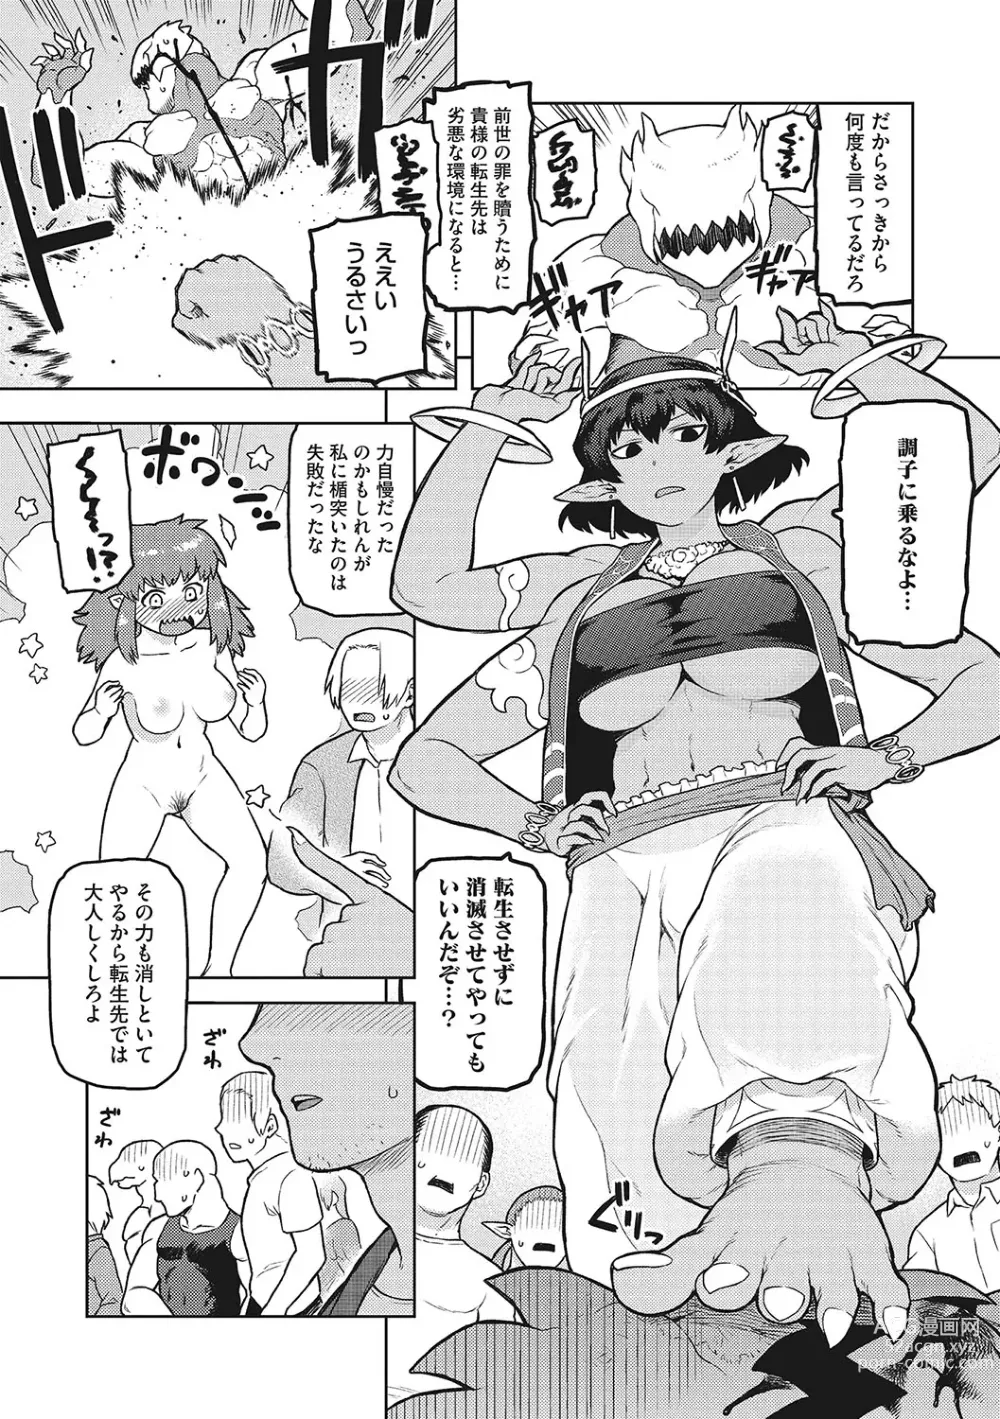 Page 4 of manga I.SyuWa.Karn Alph Lyla